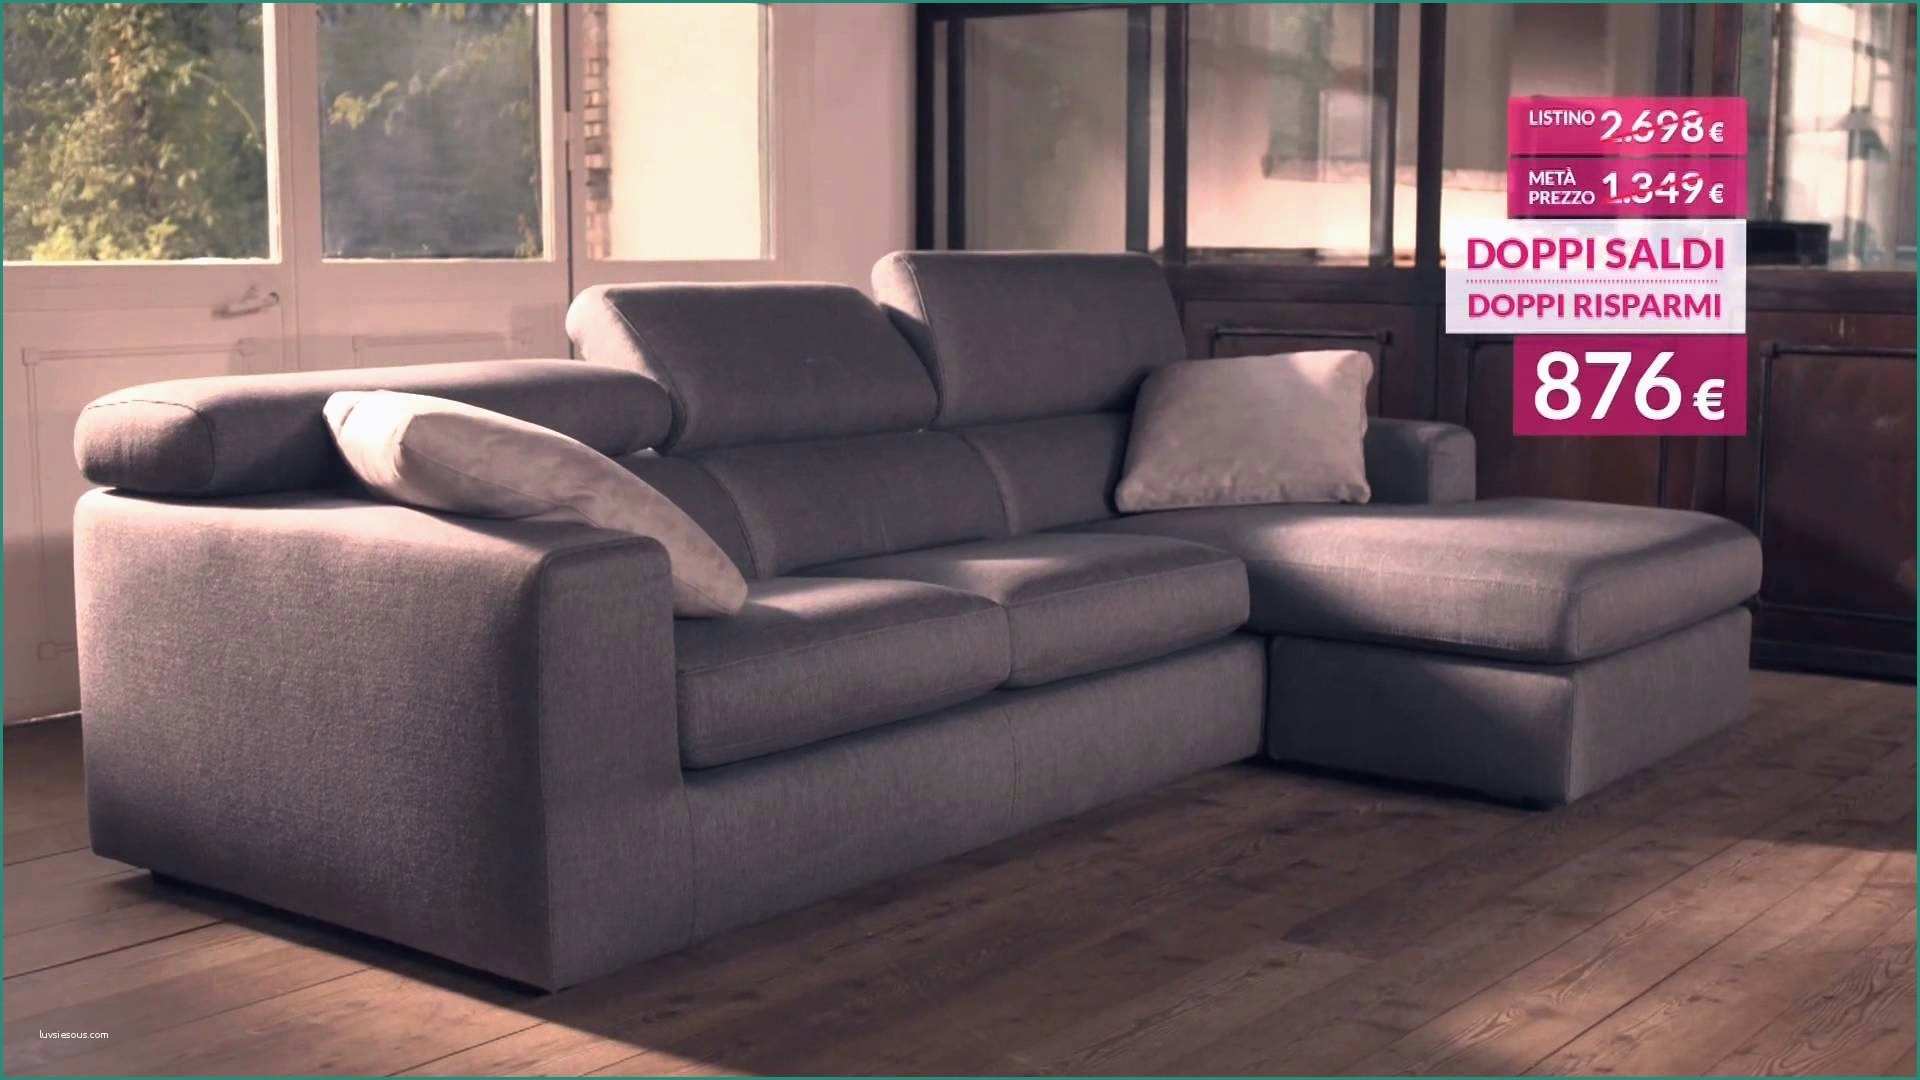 Sedia A Rotelle Dwg E 30 Elegante Poltrone E sofa Catalogo